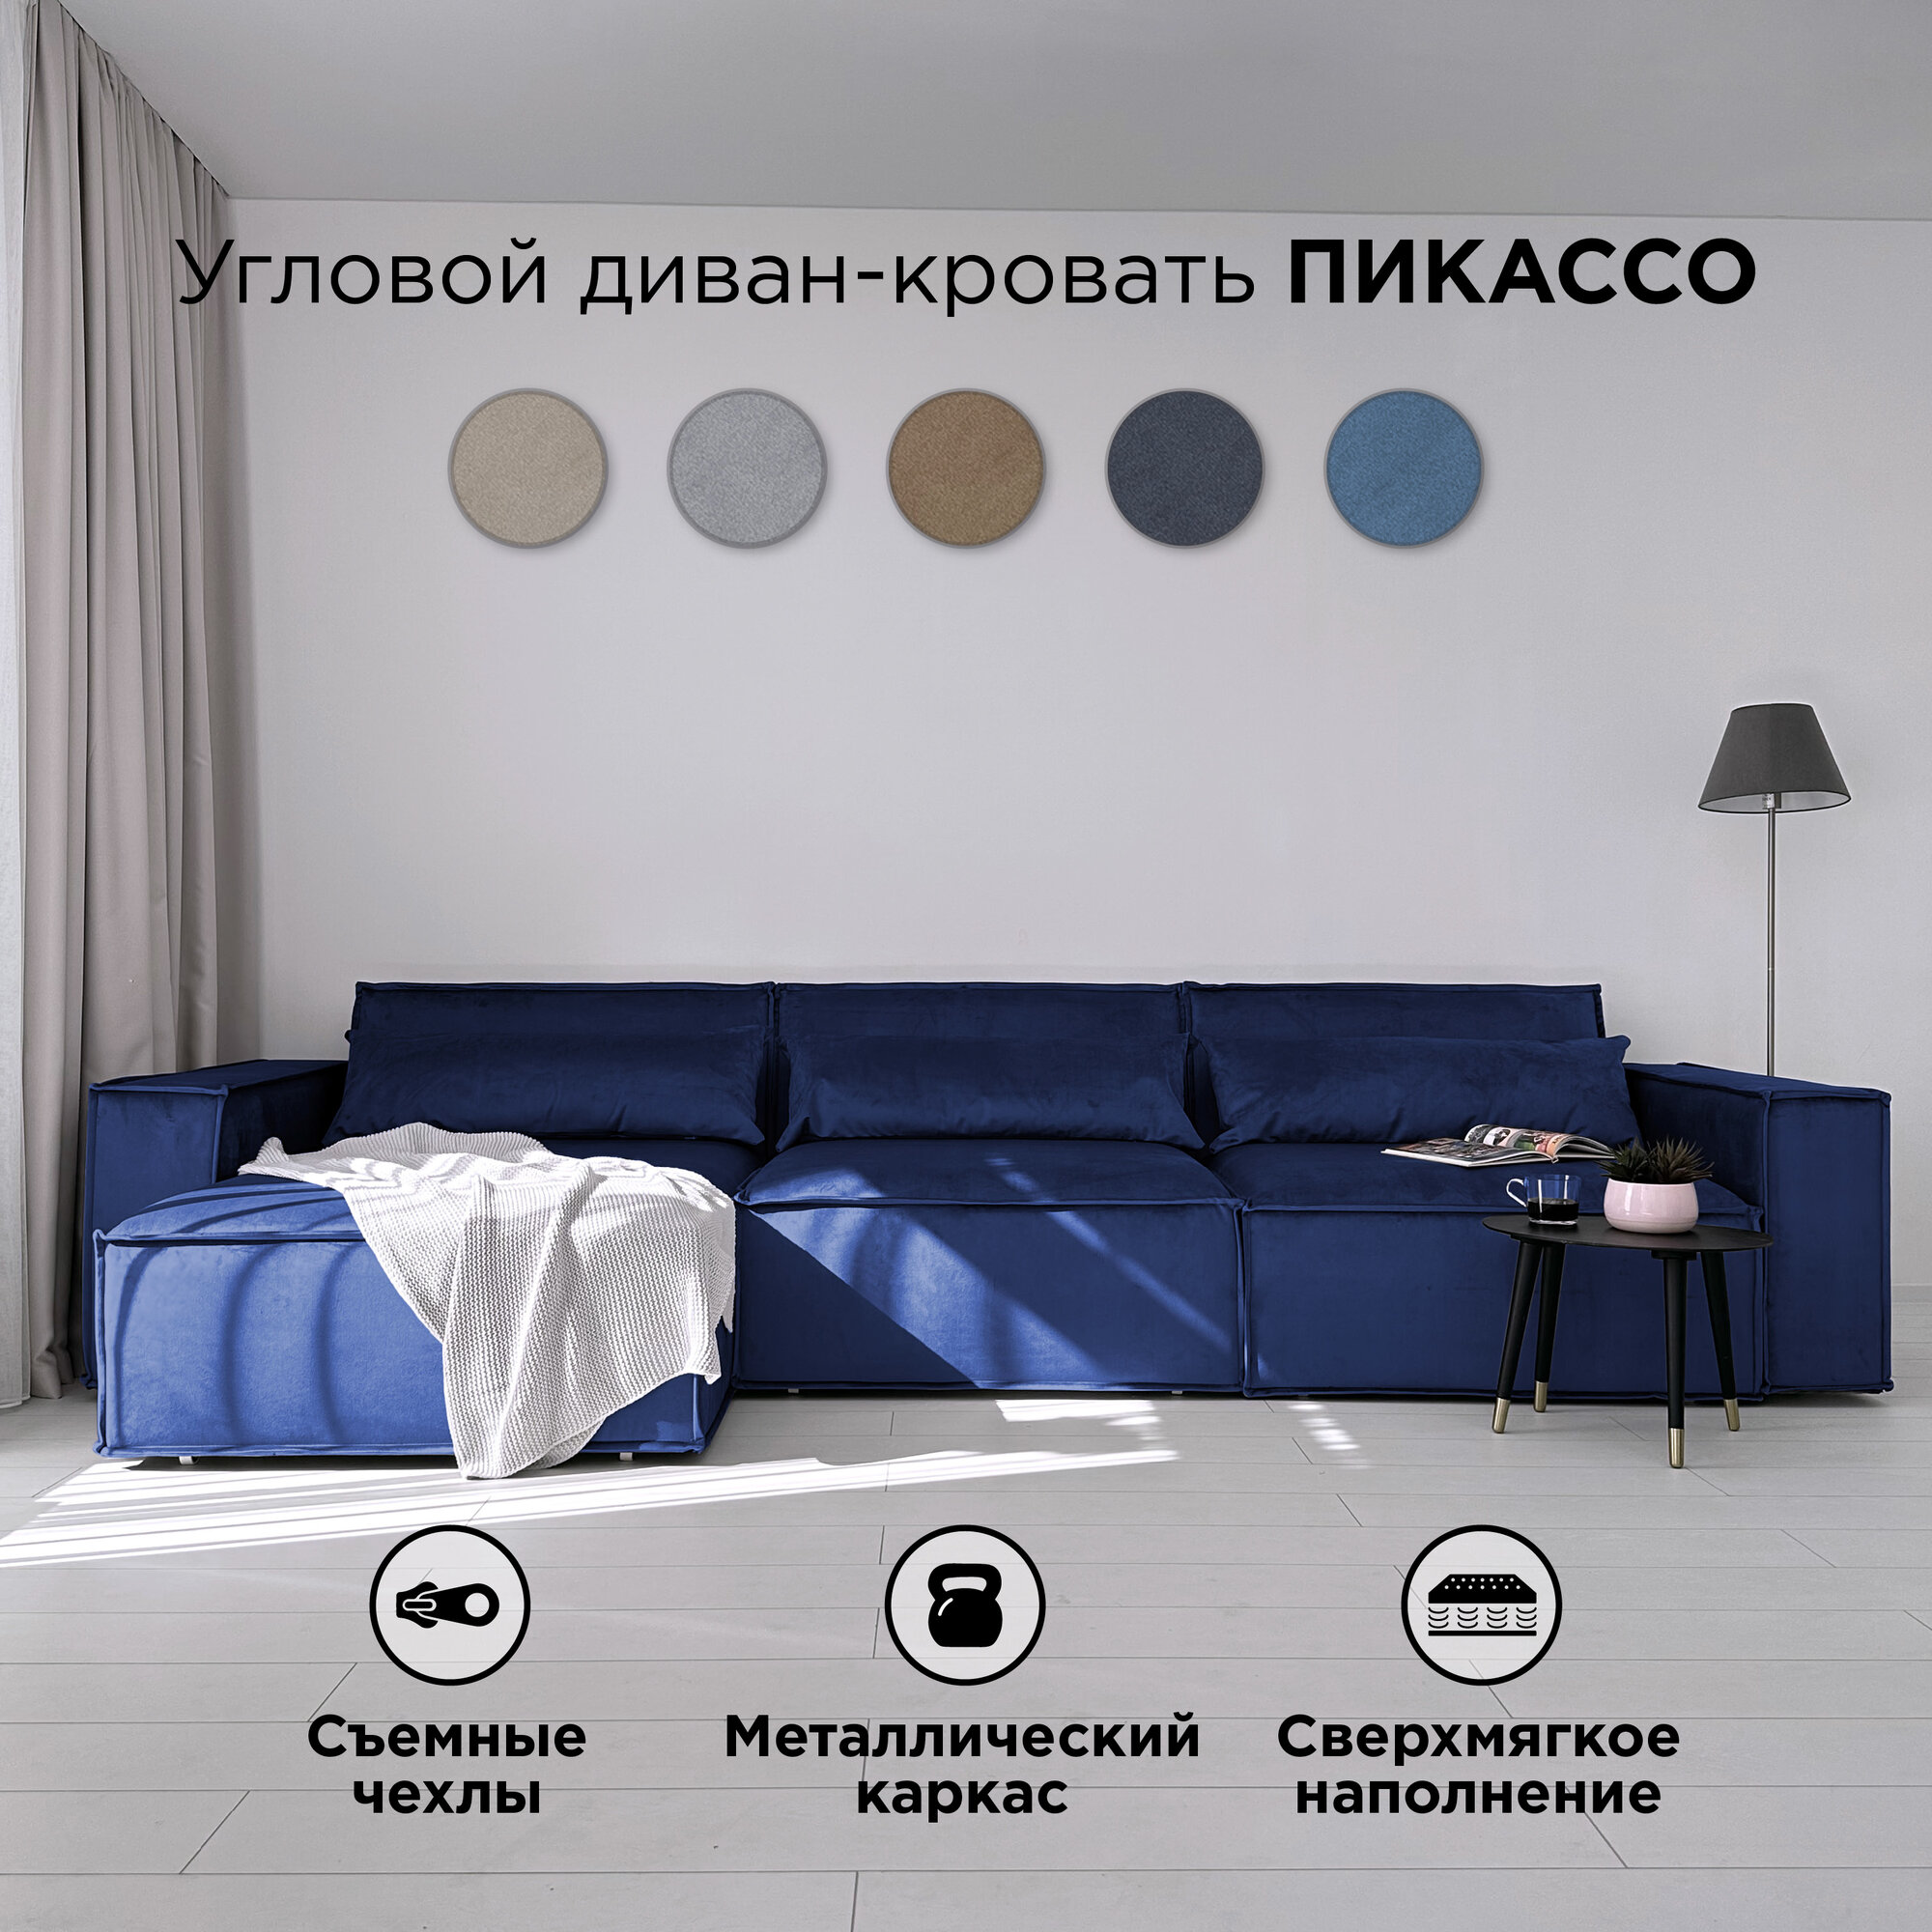 Диван-кровать Redsofa Пикассо 360 см синий антивандальный. Раскладной угловой диван со съемными чехлами, для дома и офиса.